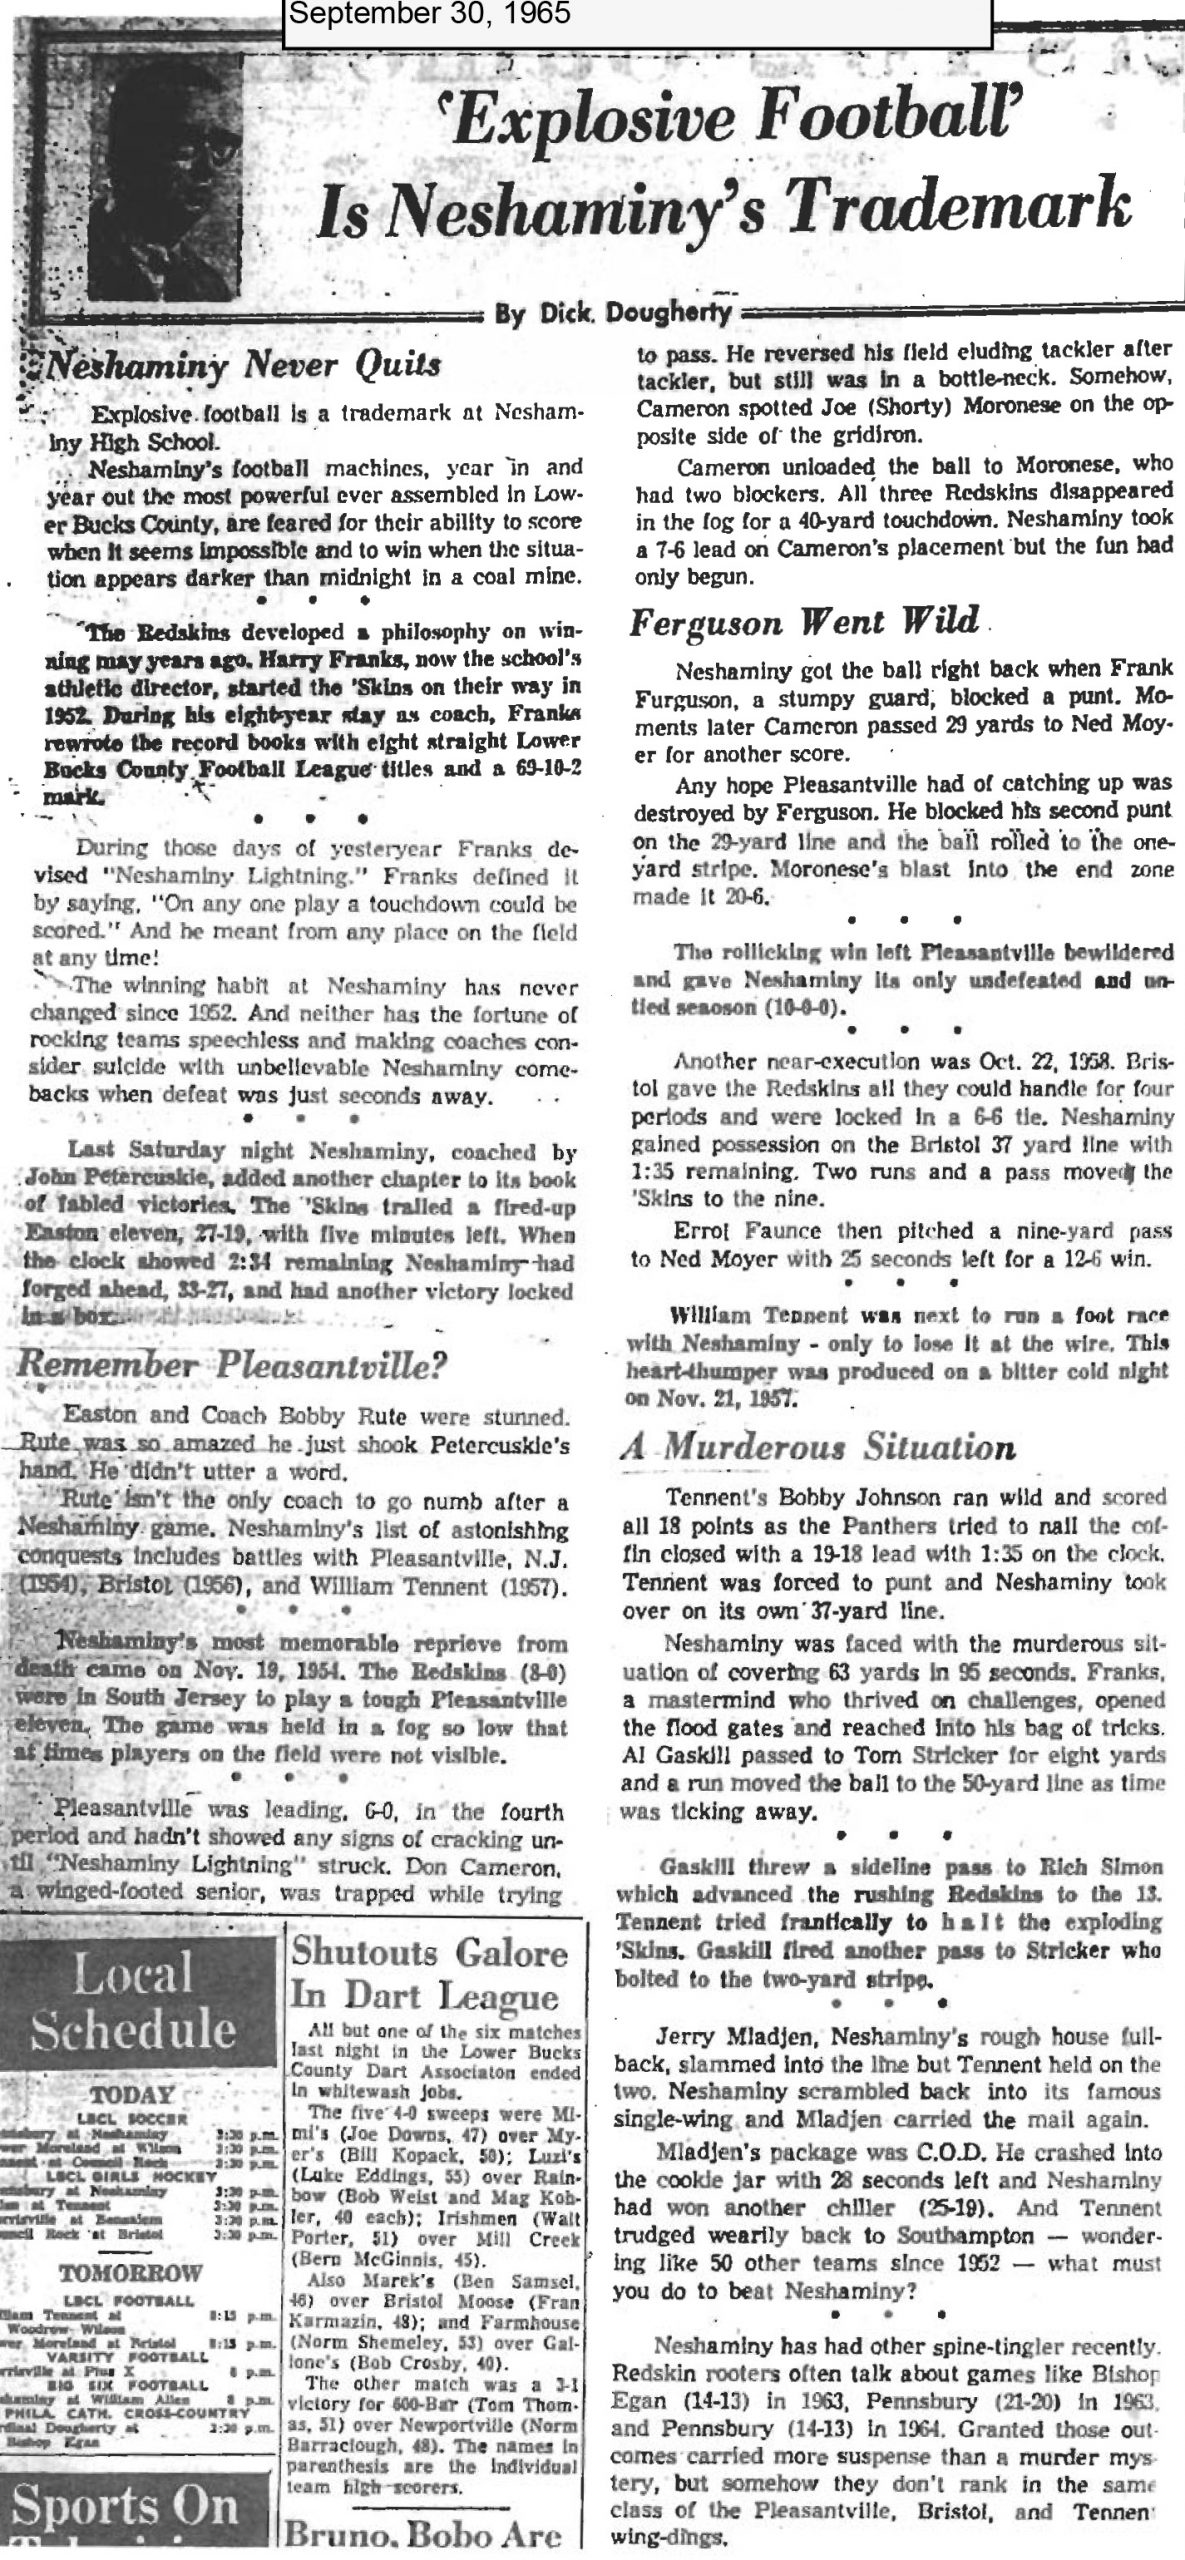 Neshaminy_1965 Sept. 30 Explosive Football article 09.20.16